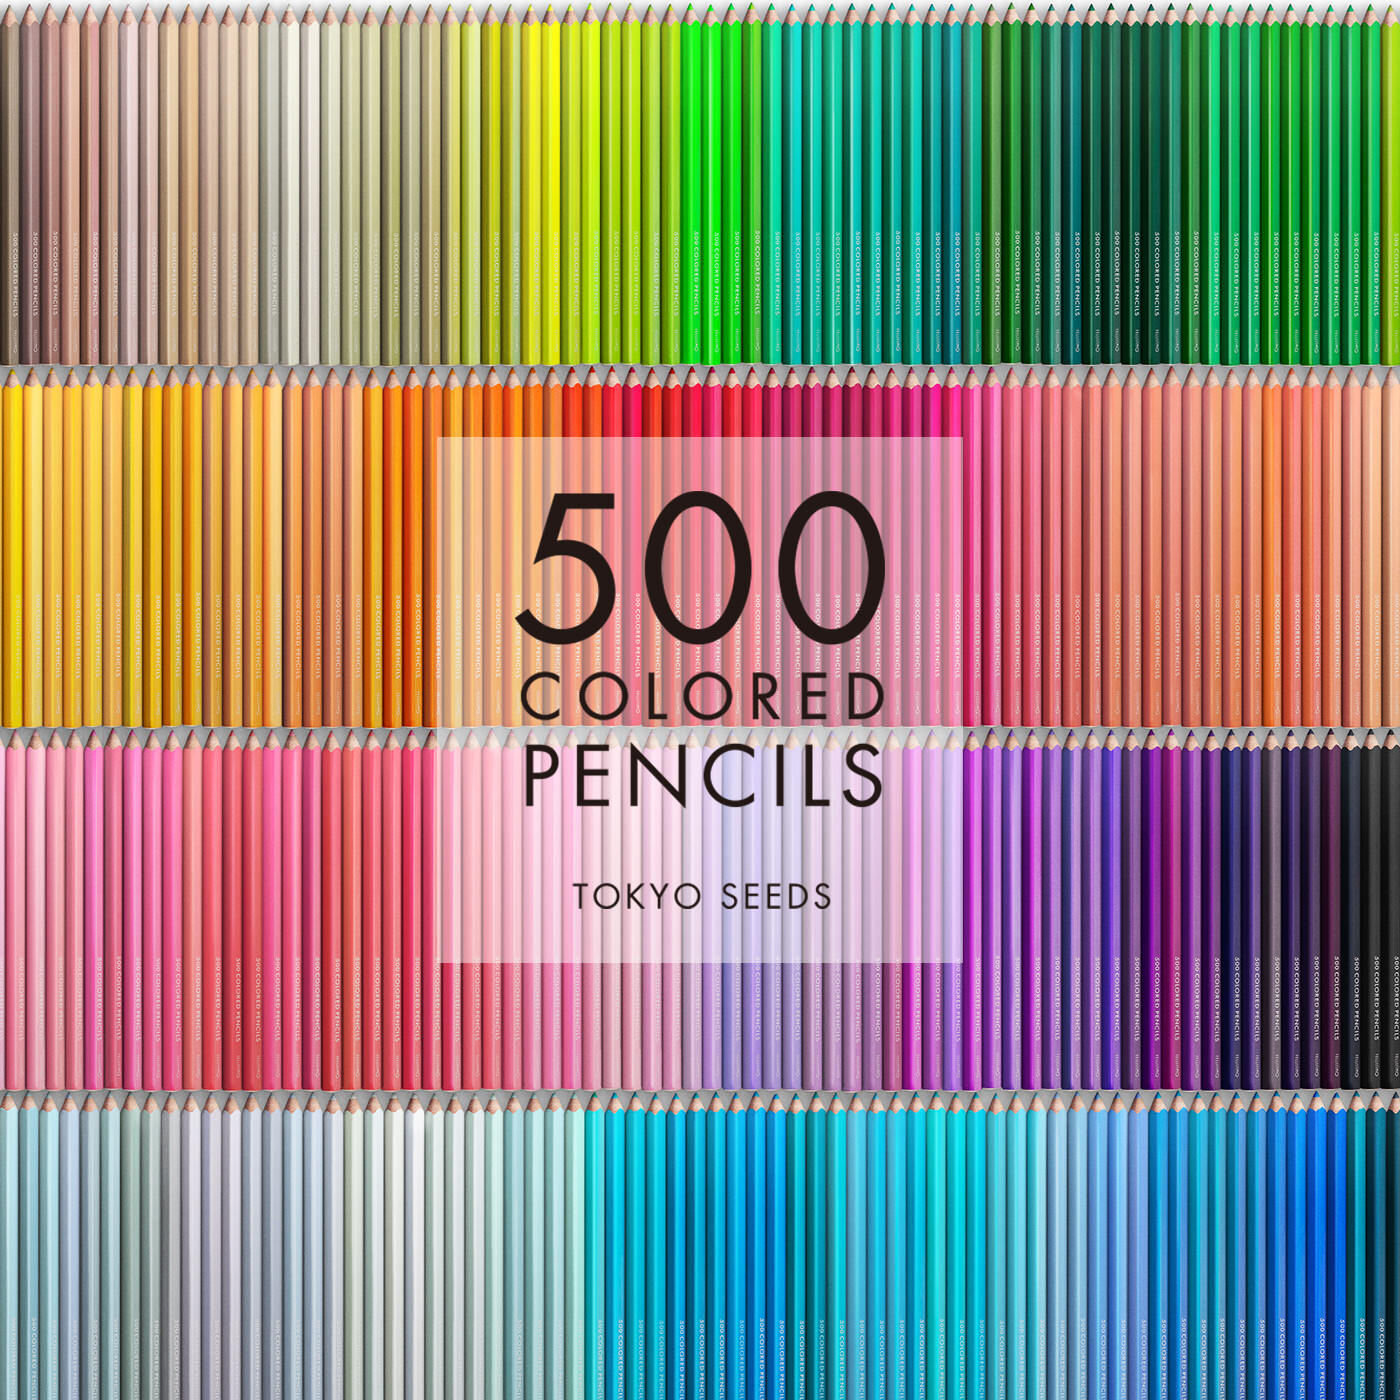 Real Stock|【303/500 JUNGLE FRUIT】500色の色えんぴつ TOKYO SEEDS|1992年、世界初の「500色」という膨大な色数の色えんぴつが誕生して以来、その販売数は発売当初から合わせると、世界55ヵ国10万セット以上。今回、メイド・イン・ジャパンにこだわり、すべてが新しく生まれ変わって登場しました。